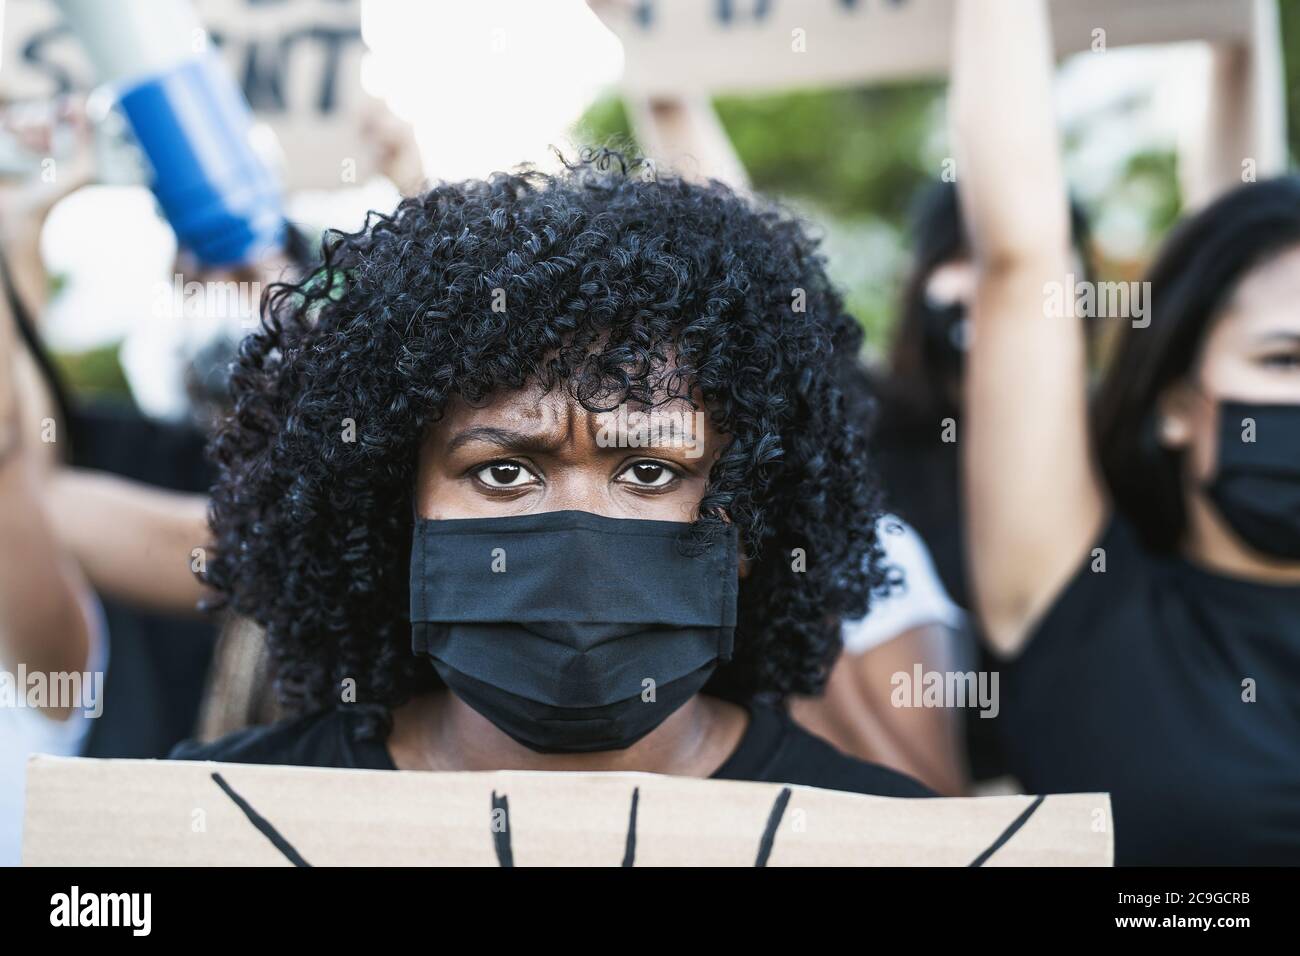 Attivista giovane donna afro che protesta contro il razzismo e la lotta per l'uguaglianza - Black Lives materia dimostrazione in strada per la giustizia Foto Stock